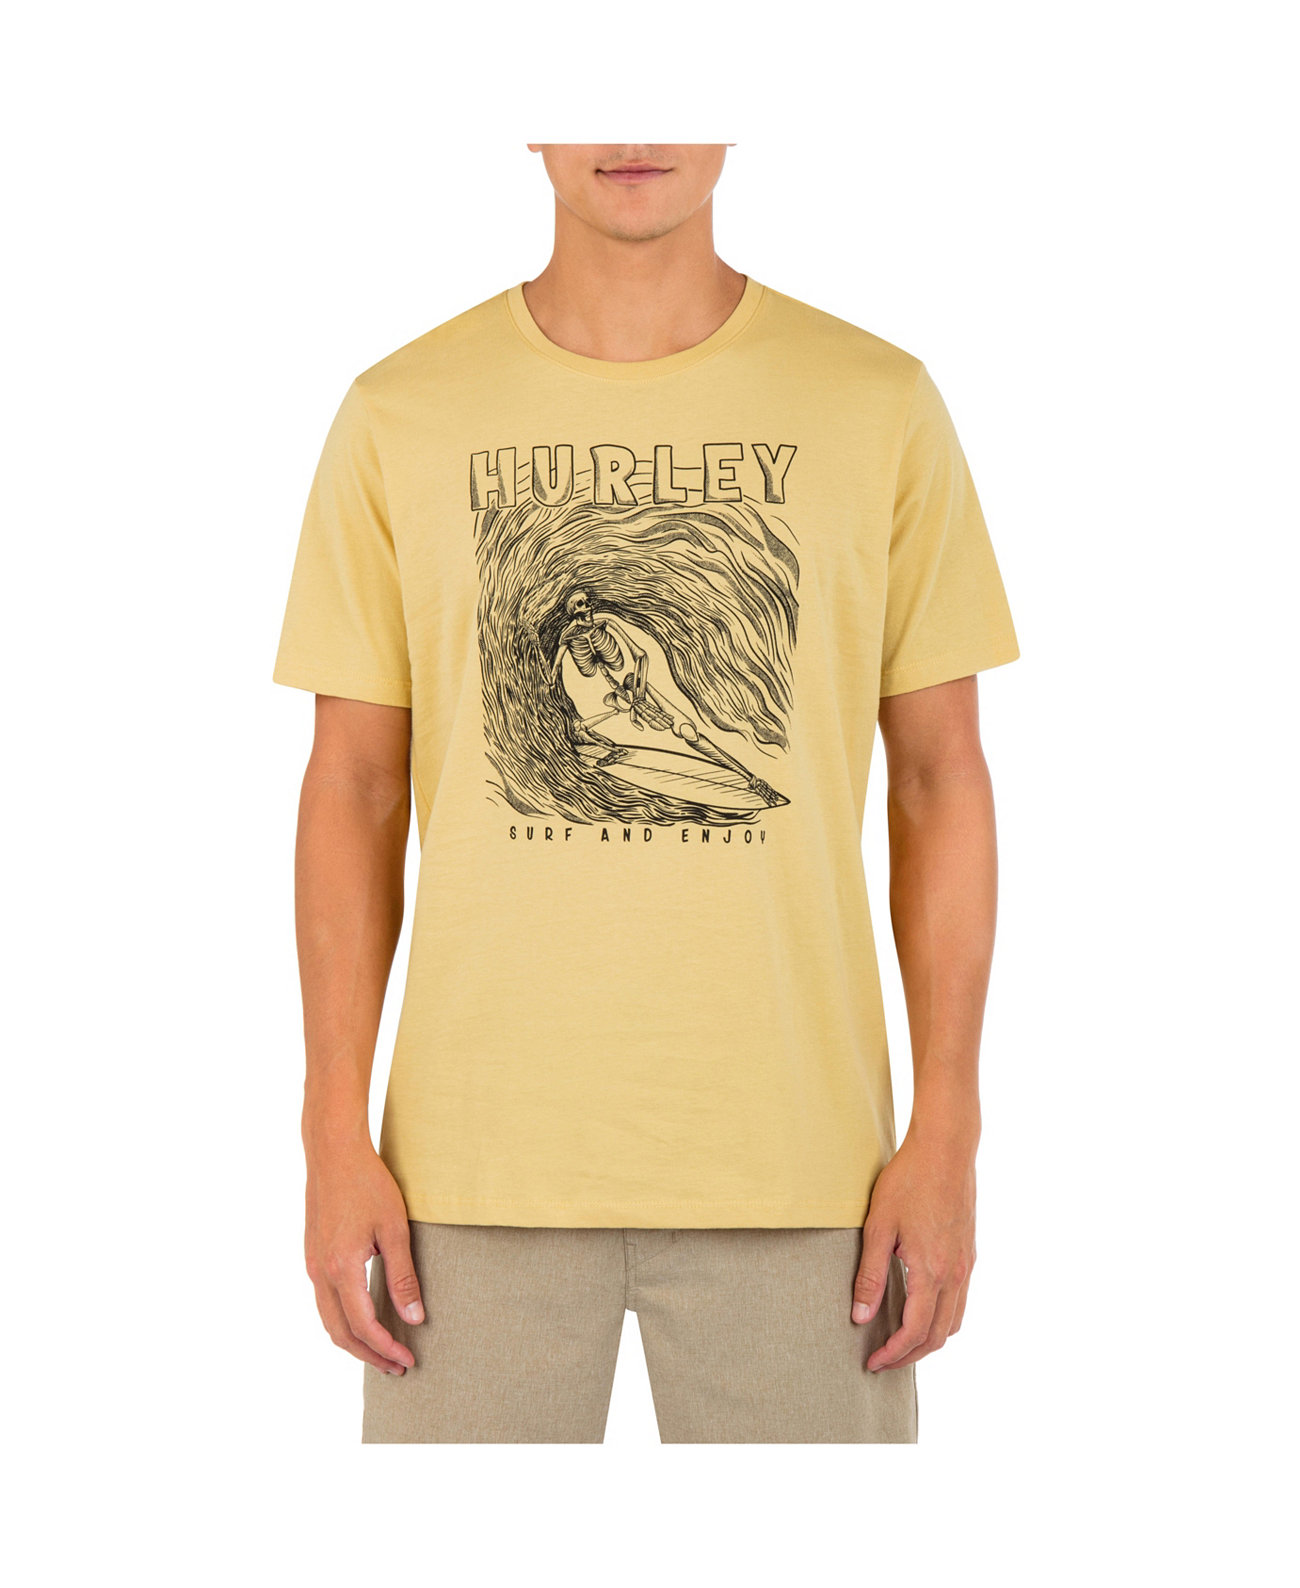 Мужская футболка с коротким рукавом Skelly для повседневного серфинга Hurley